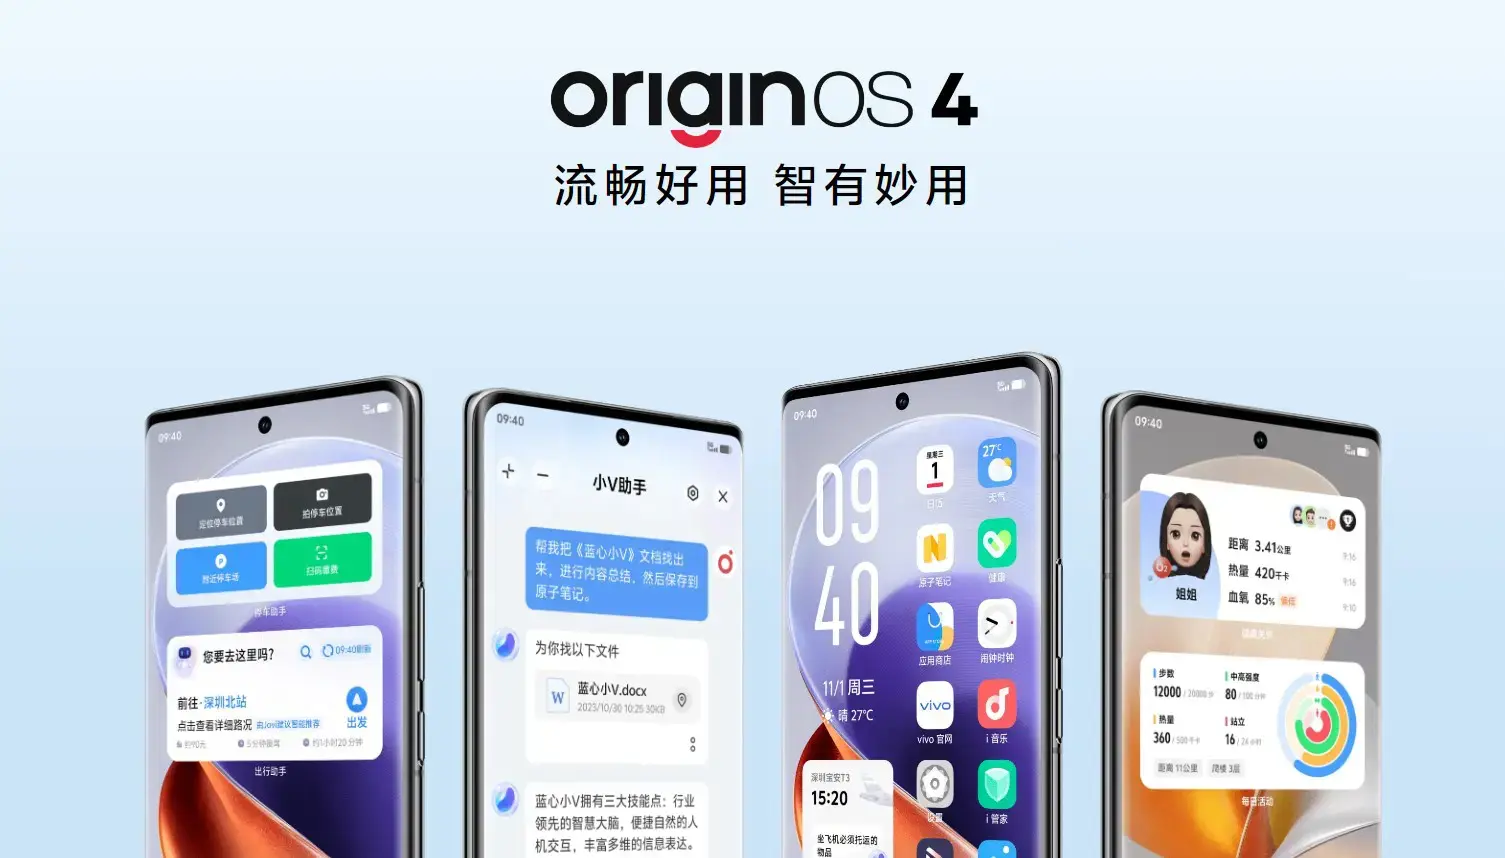 OriginOS 4 è il nuovo firmware di vivo che ottimizza la memoria, riduce il consumo energetico e migliora i tempi di attività.